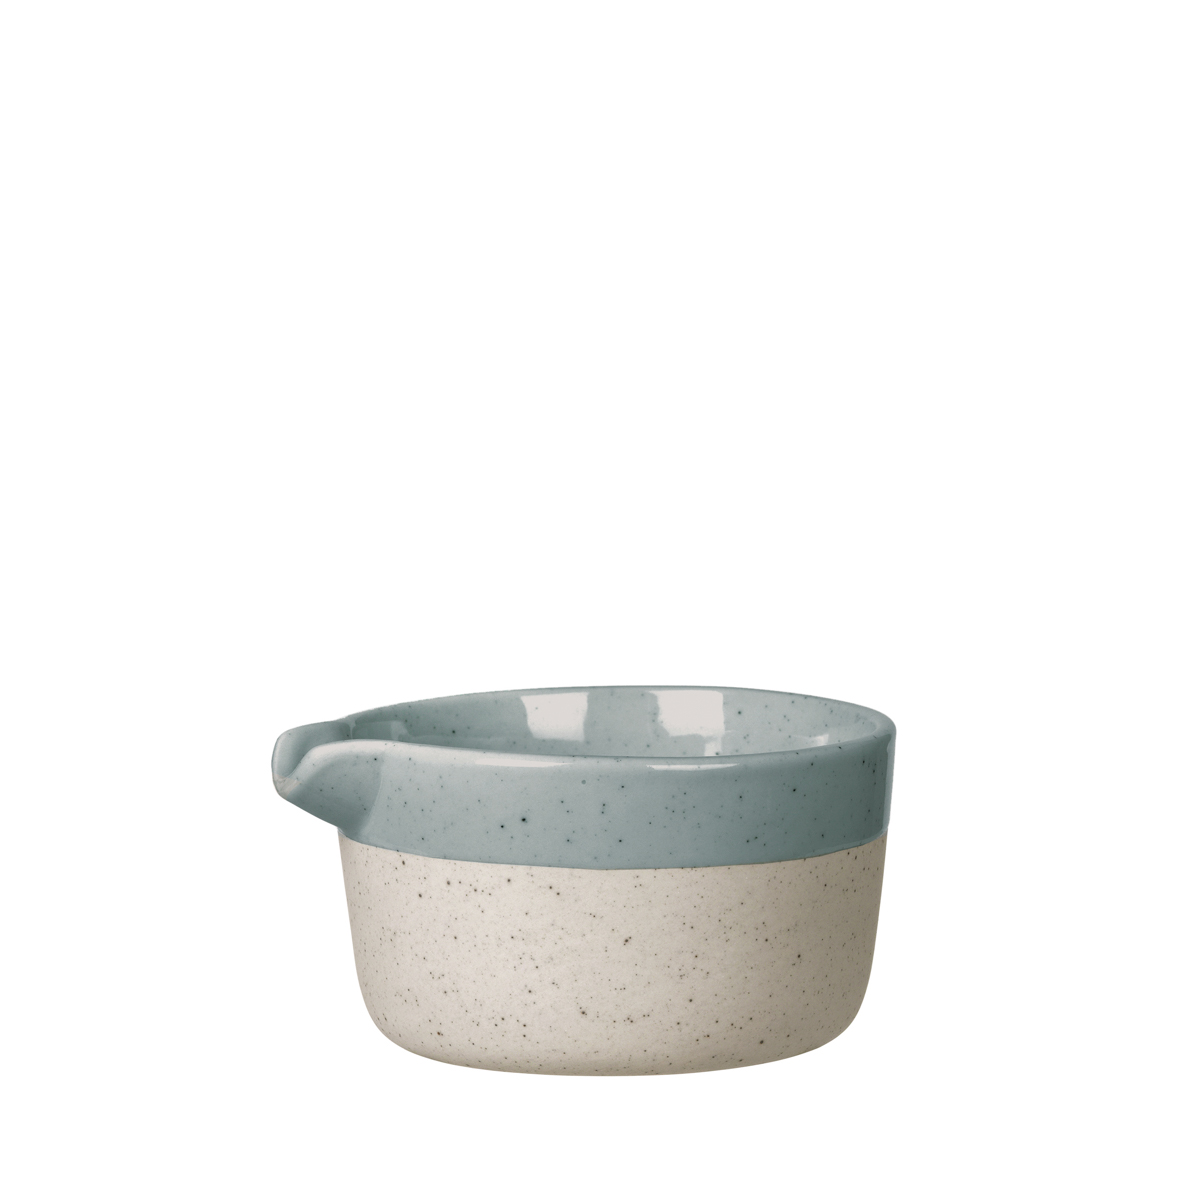 Milchkännchen -SABLO- Stone 150 ml, Ø 8,5 cm. Material: Keramik. Von Blomus.